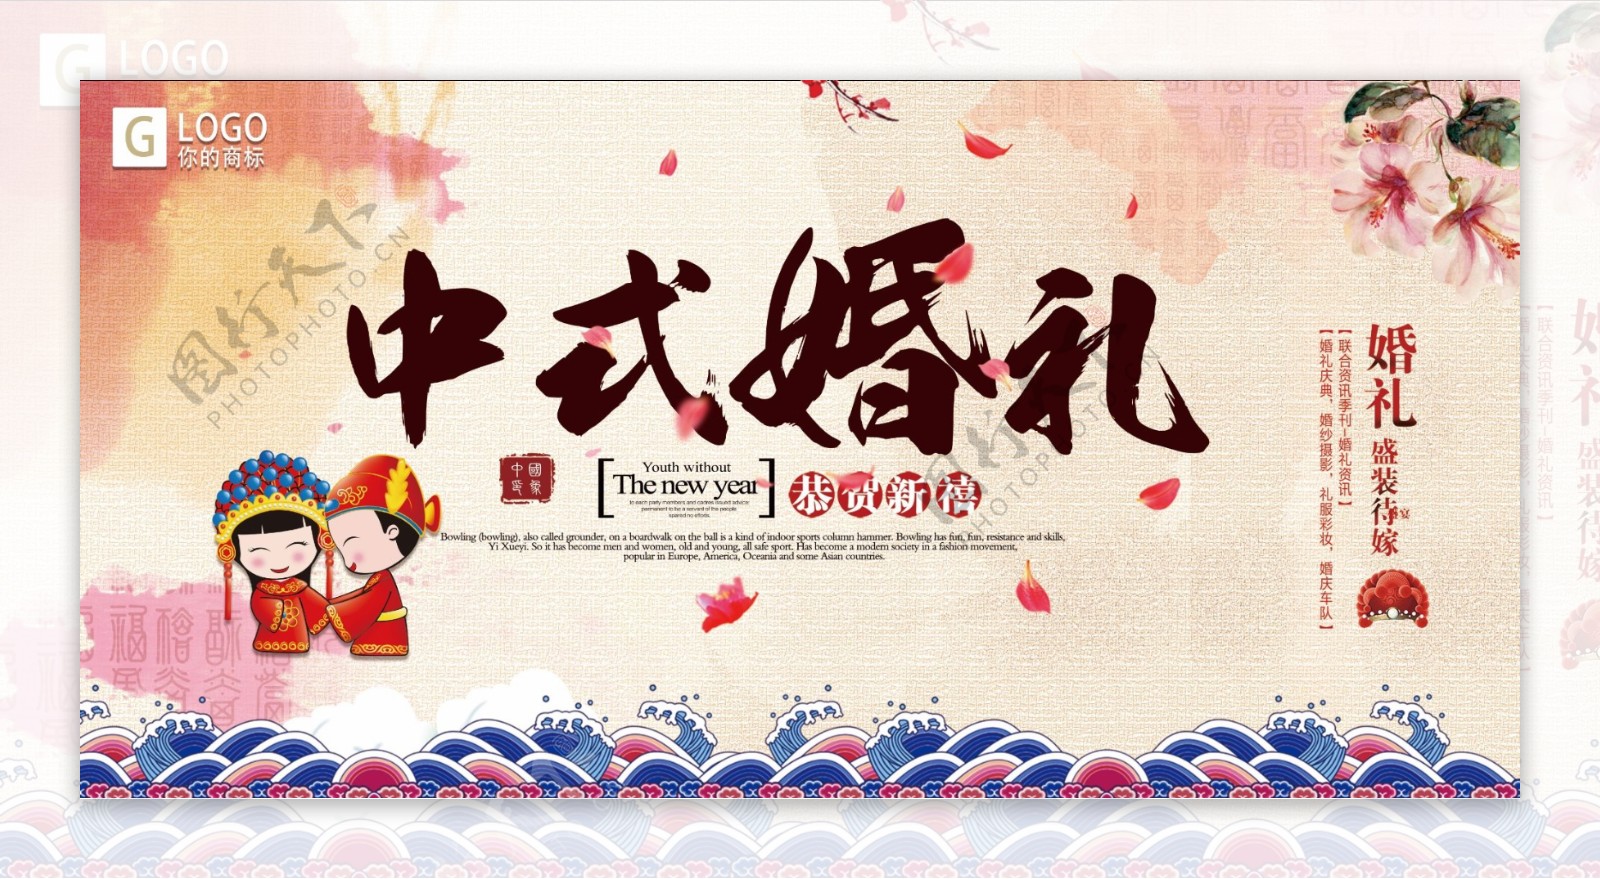 中国式简约大气婚礼背景展板设计